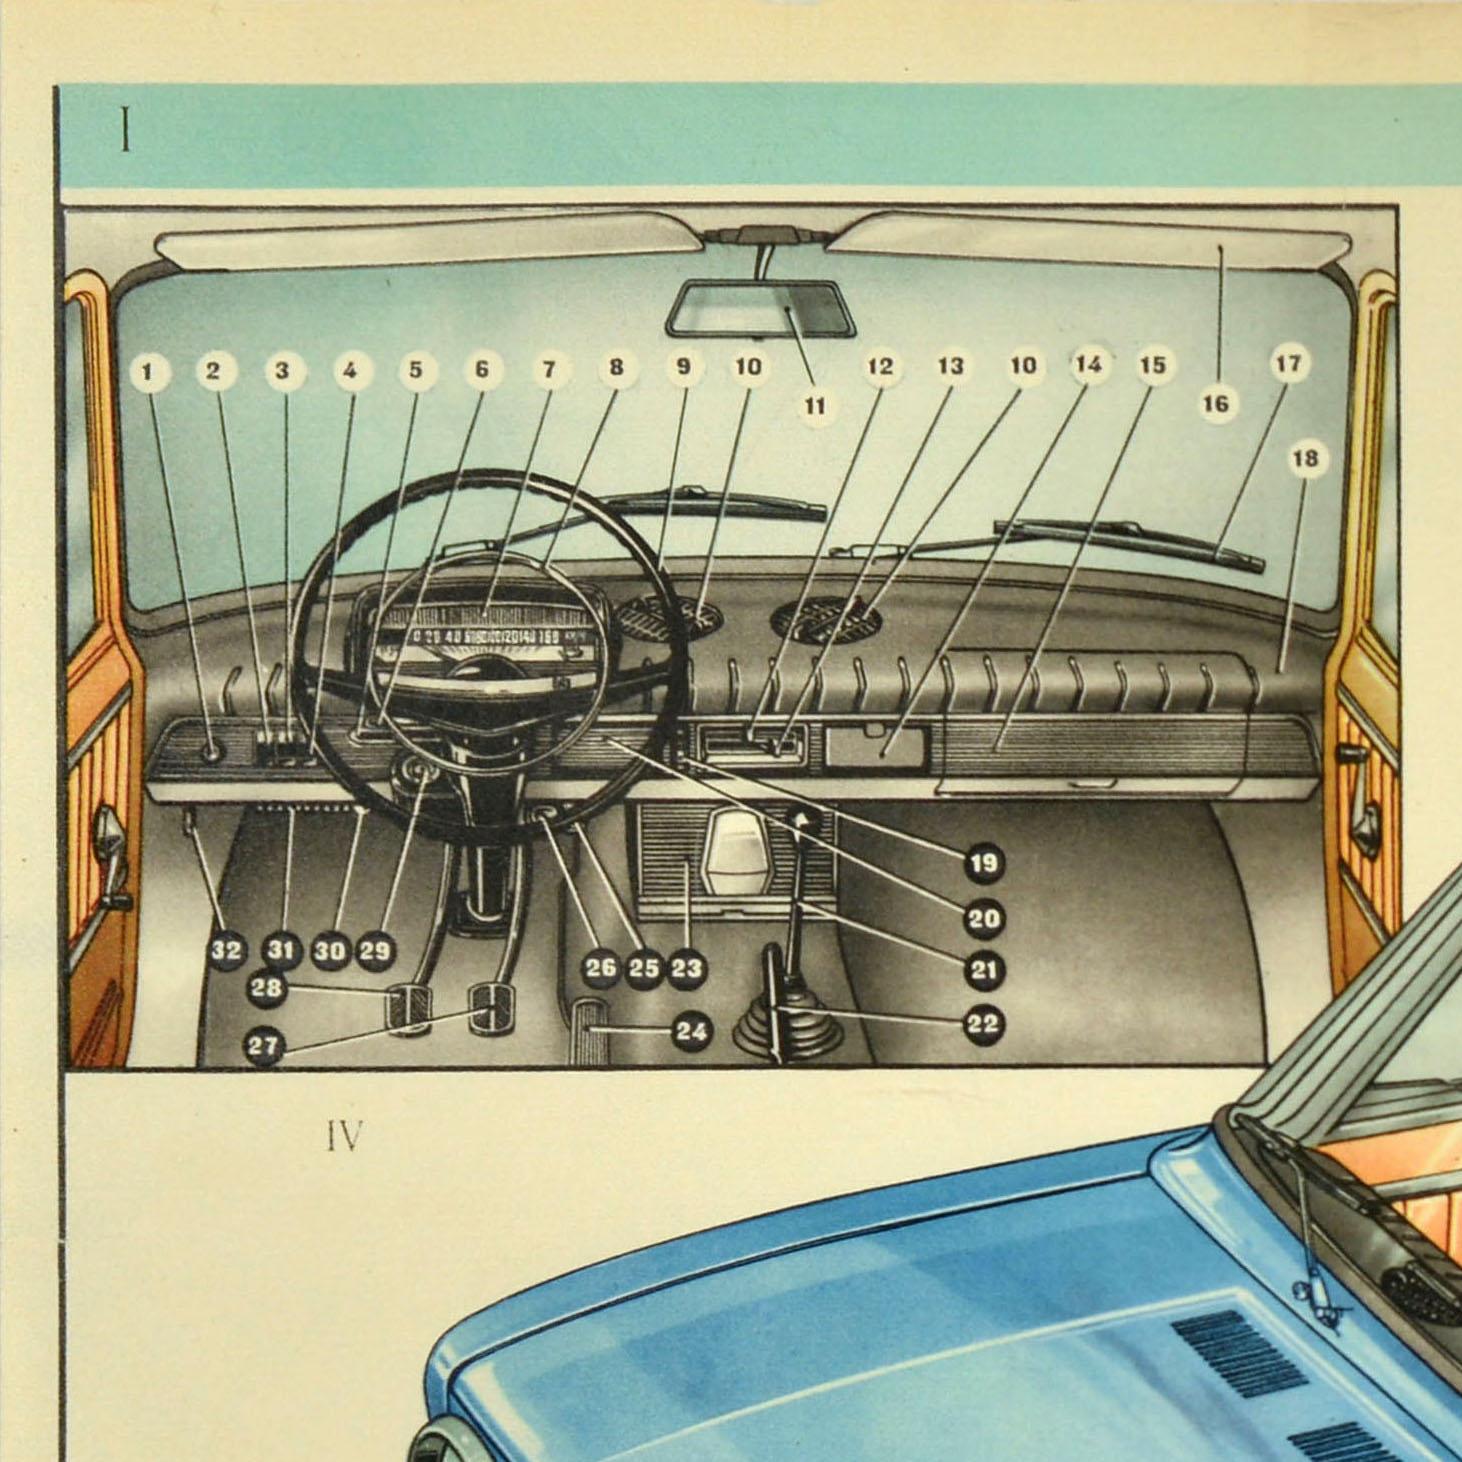 Affiche publicitaire originale pour Lada montrant l'extérieur et l'intérieur du véhicule avec des images plus petites du tableau de bord et du panneau d'affichage ainsi que les dimensions de la voiture de face et de côté, le texte en dessous - v/o